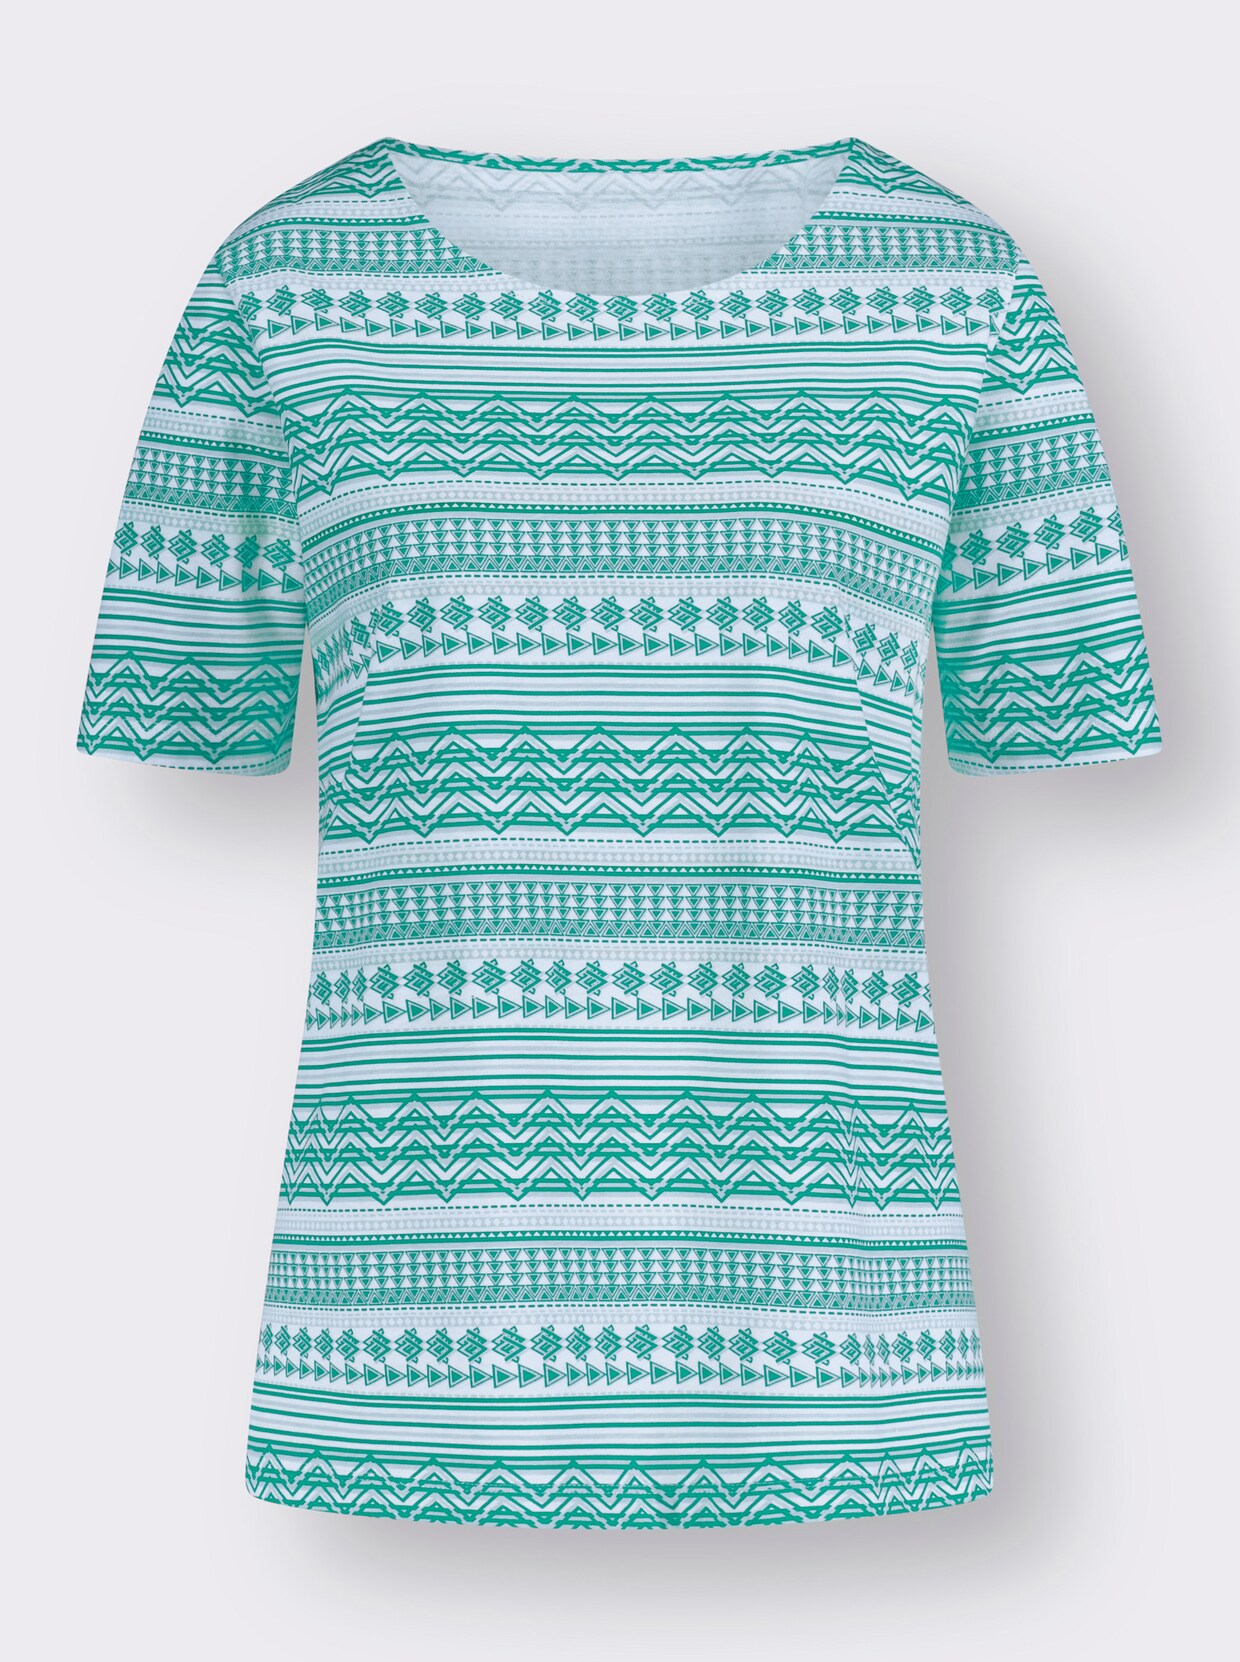 Tričko s krátkým rukávem - smaragdová-vzor